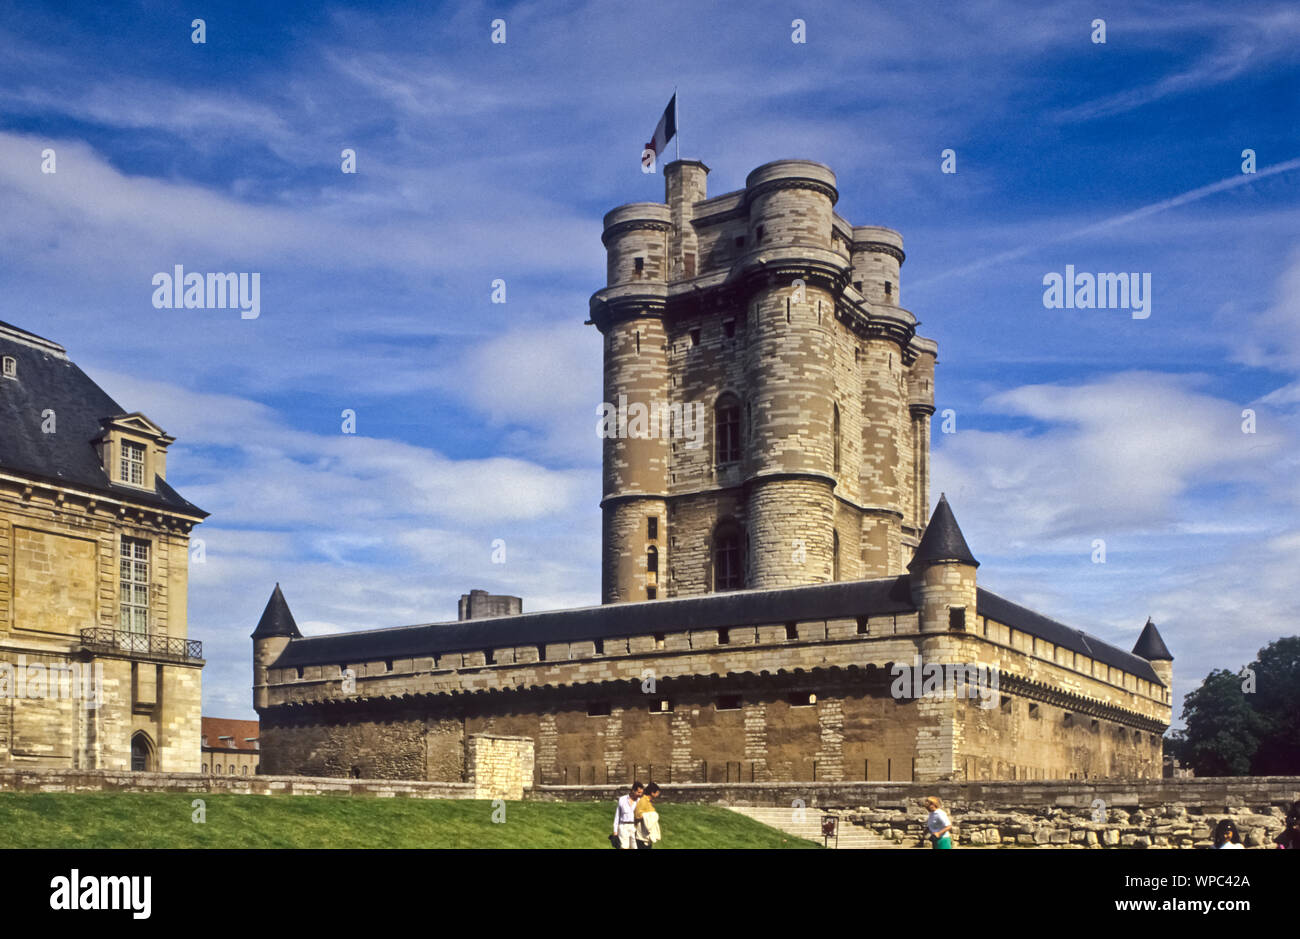 Das Schloss Vincennes in der am östlichen Rand von Paris gelegenen Stadt Vincennes ist neben dem Louvre eines der bedeutendsten Schlösser in der Gesch Stock Photo